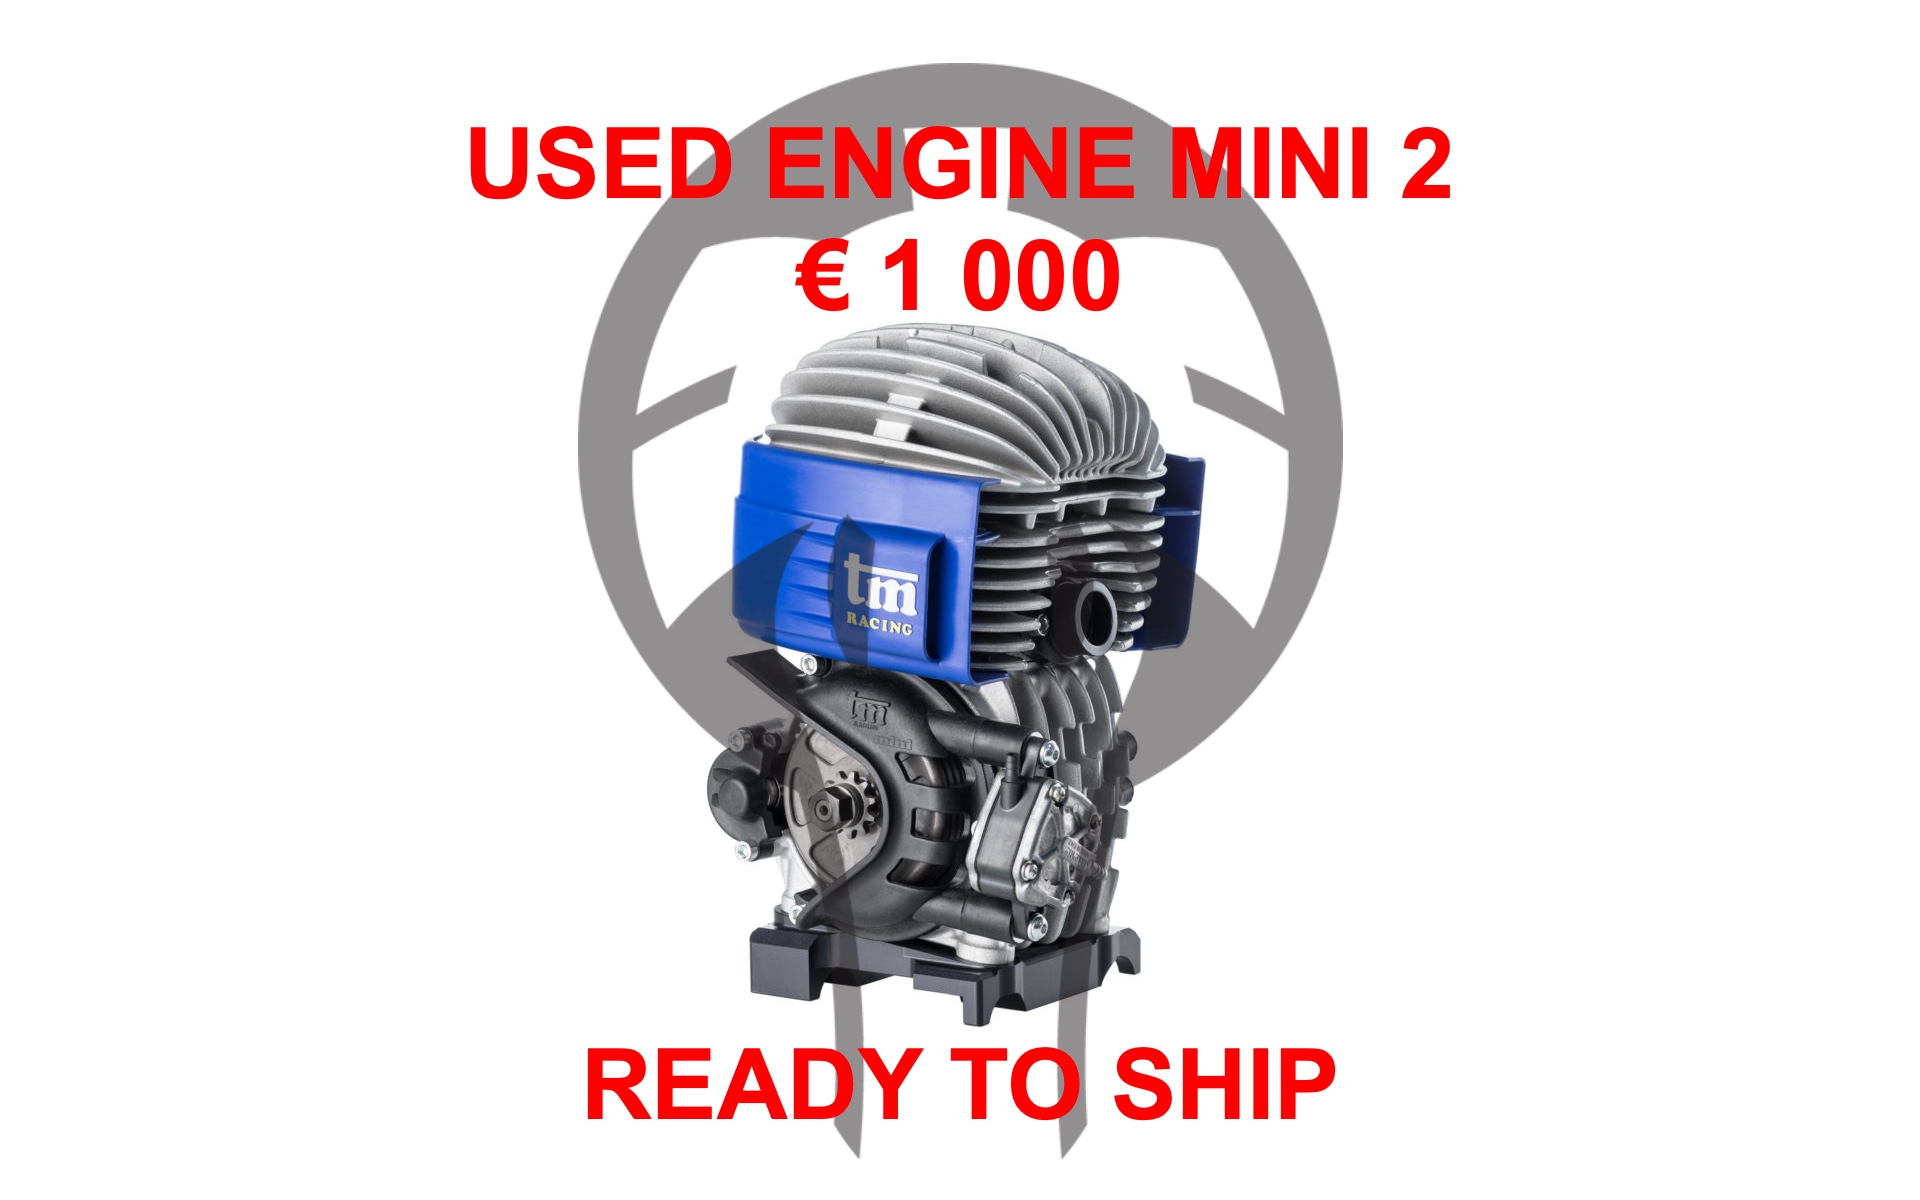 USED ENGINE MINI 2